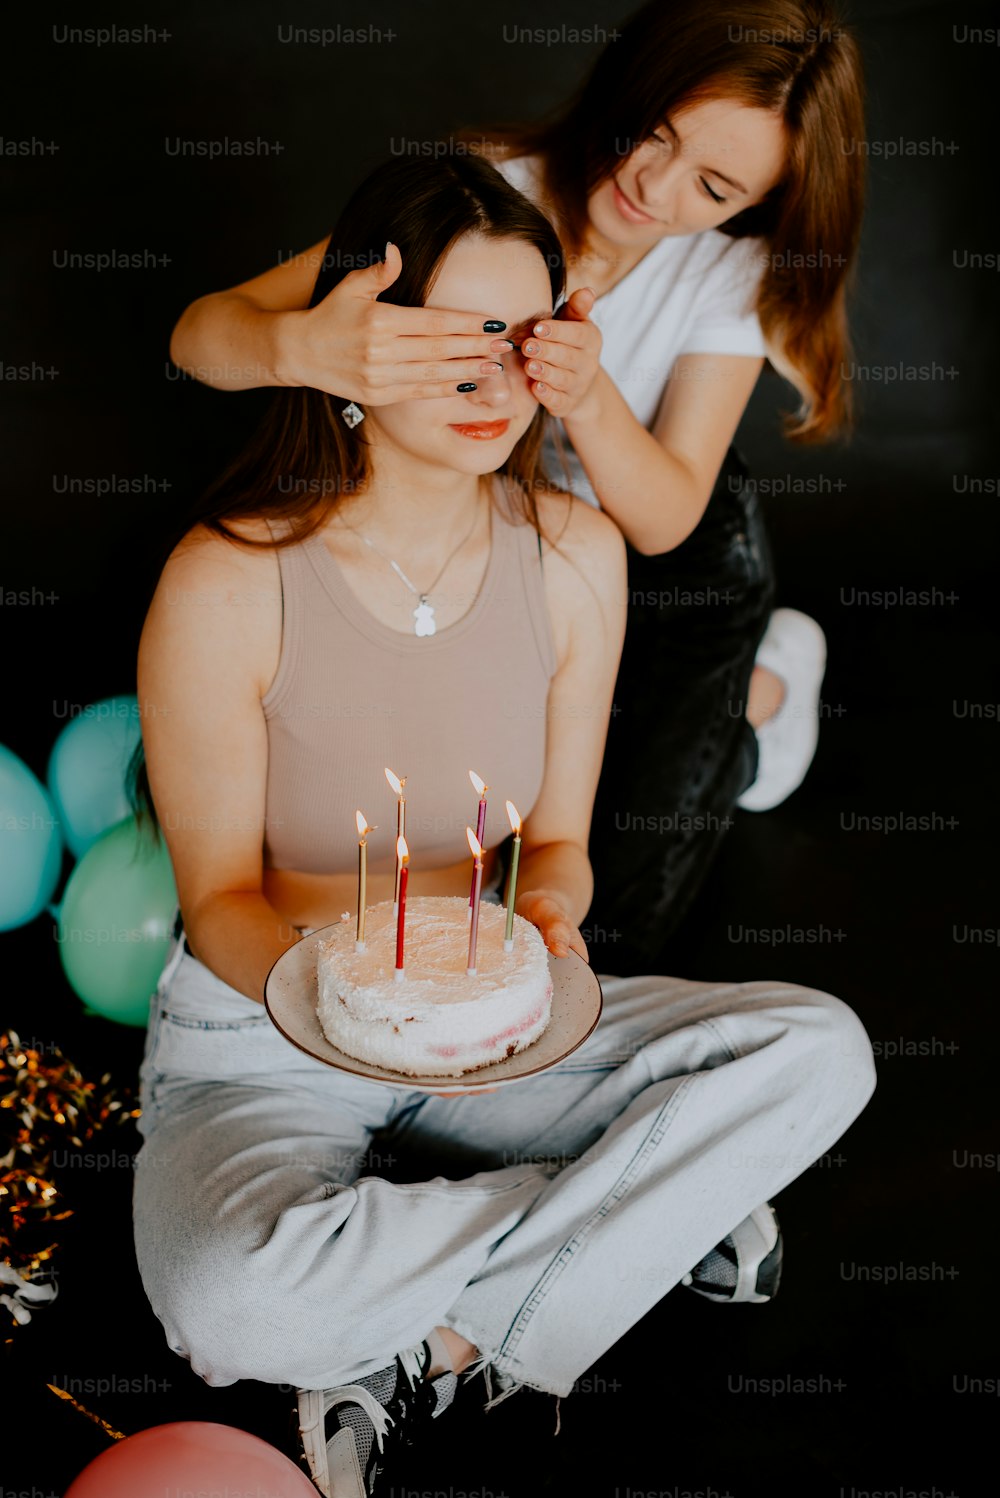 ろうそくがついたケーキの前に�座っている女性